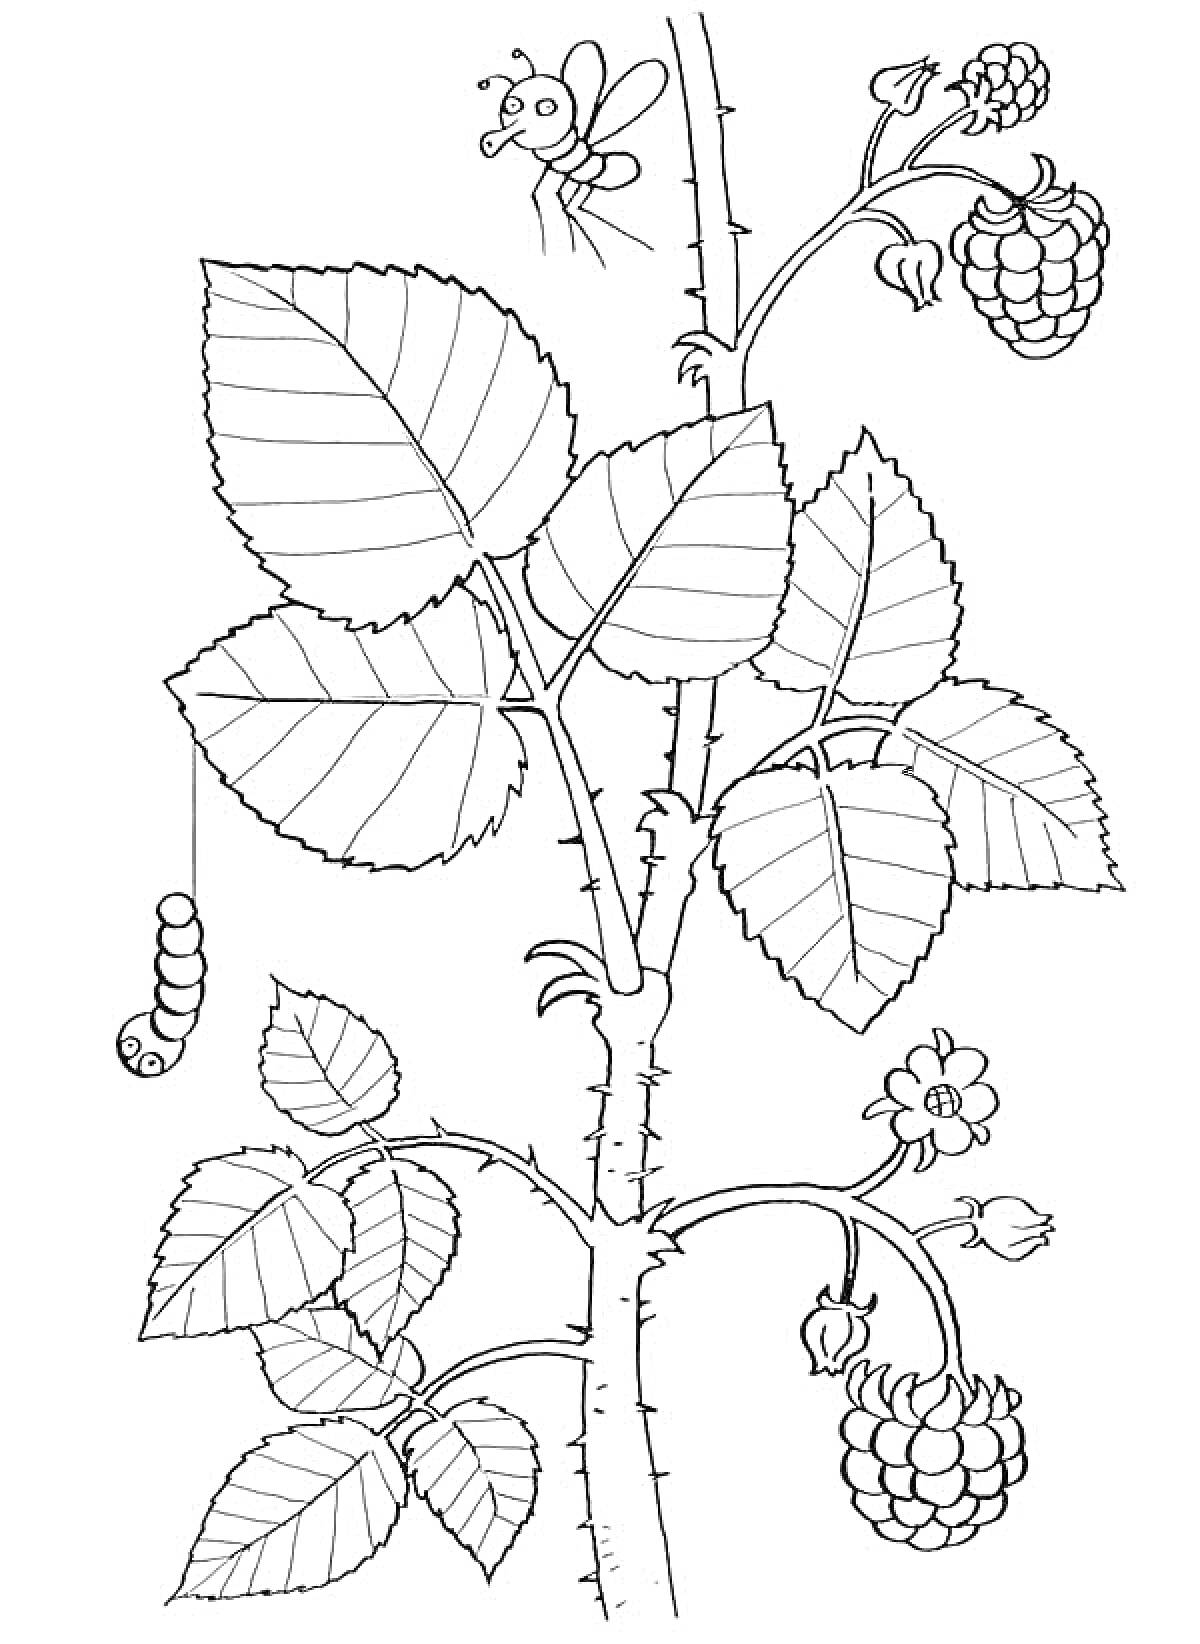 Раскраска Малиновый куст с ягодами, листьями, гусеницей и пчелой